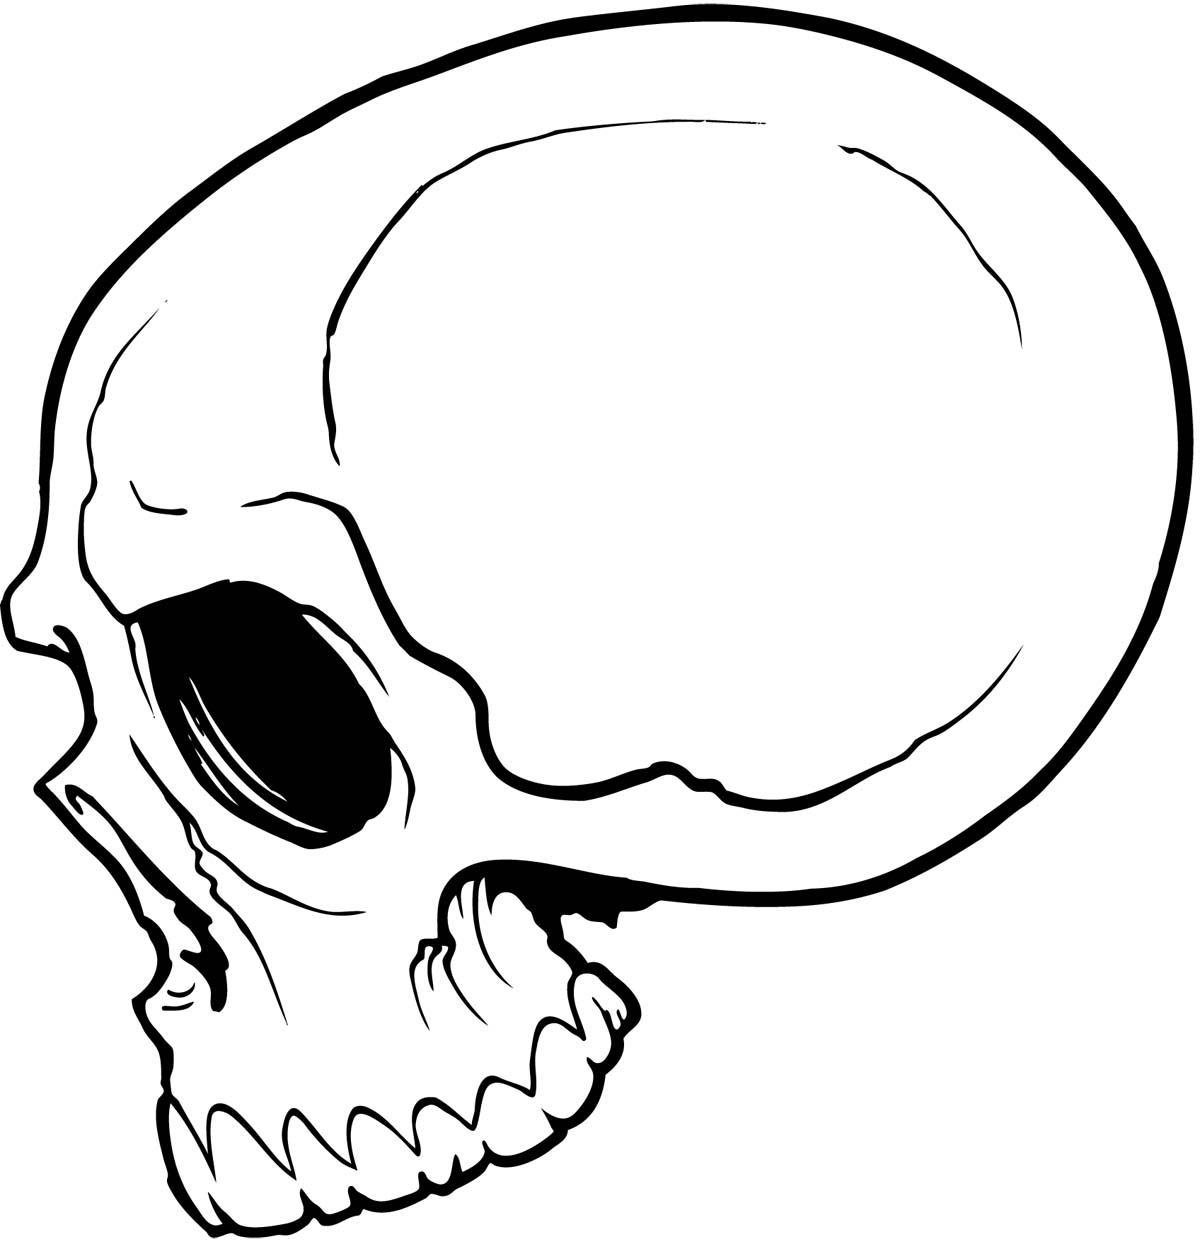 Easy Skull Drawing